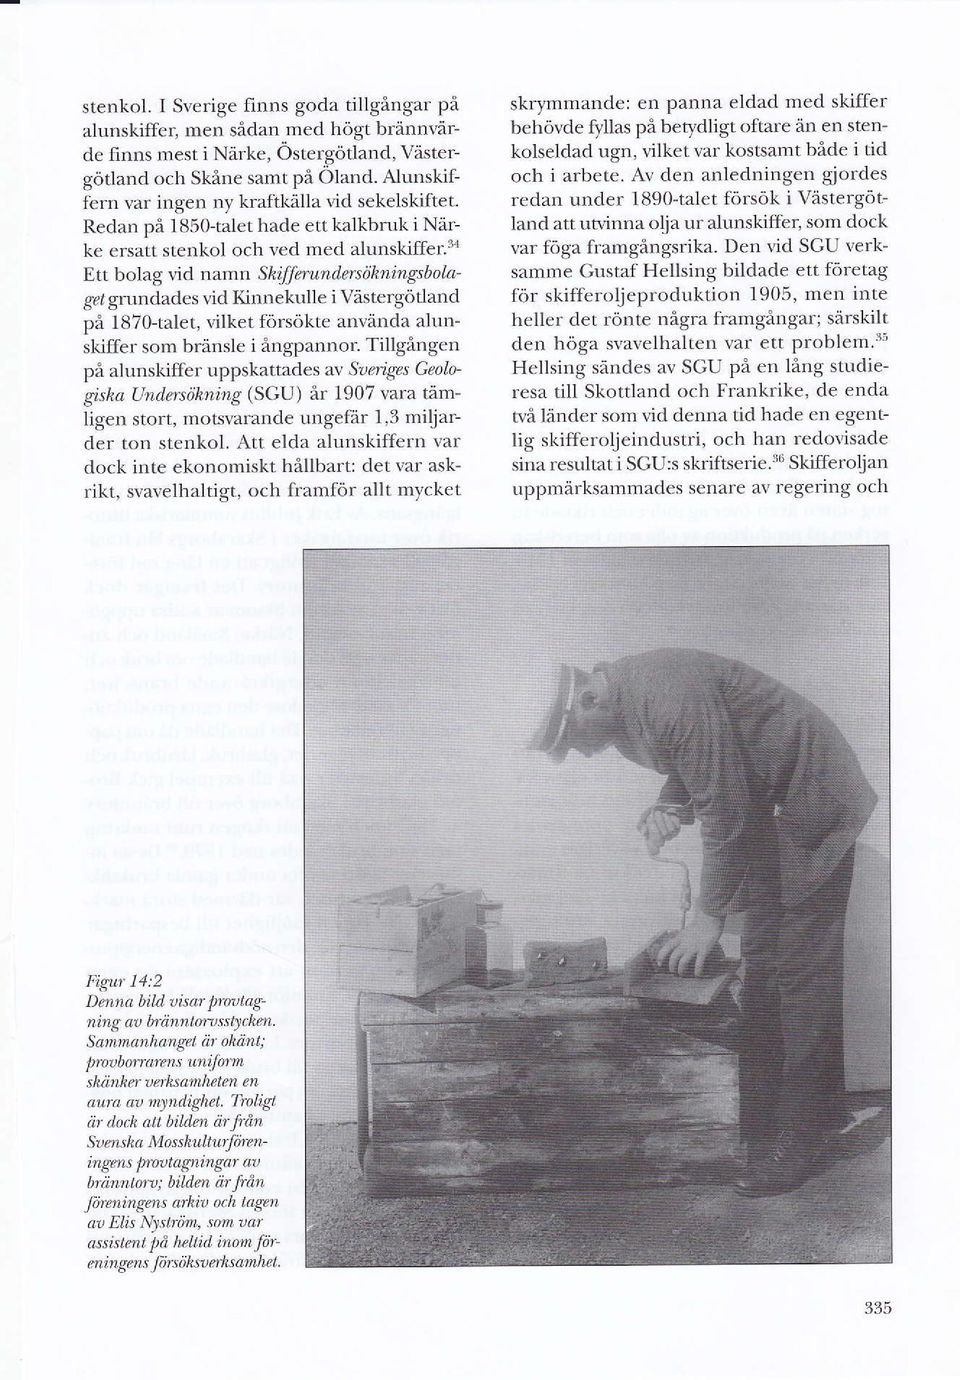 tökningsbolu' gel urundades vicl Kinnekulle i Våstergiltland på 1870-talet, vilket försökte använda alunskiffer som bränsle i ångpannor Tillgången på alunskiffcr uppskattades av Srrrjges Grologtsha